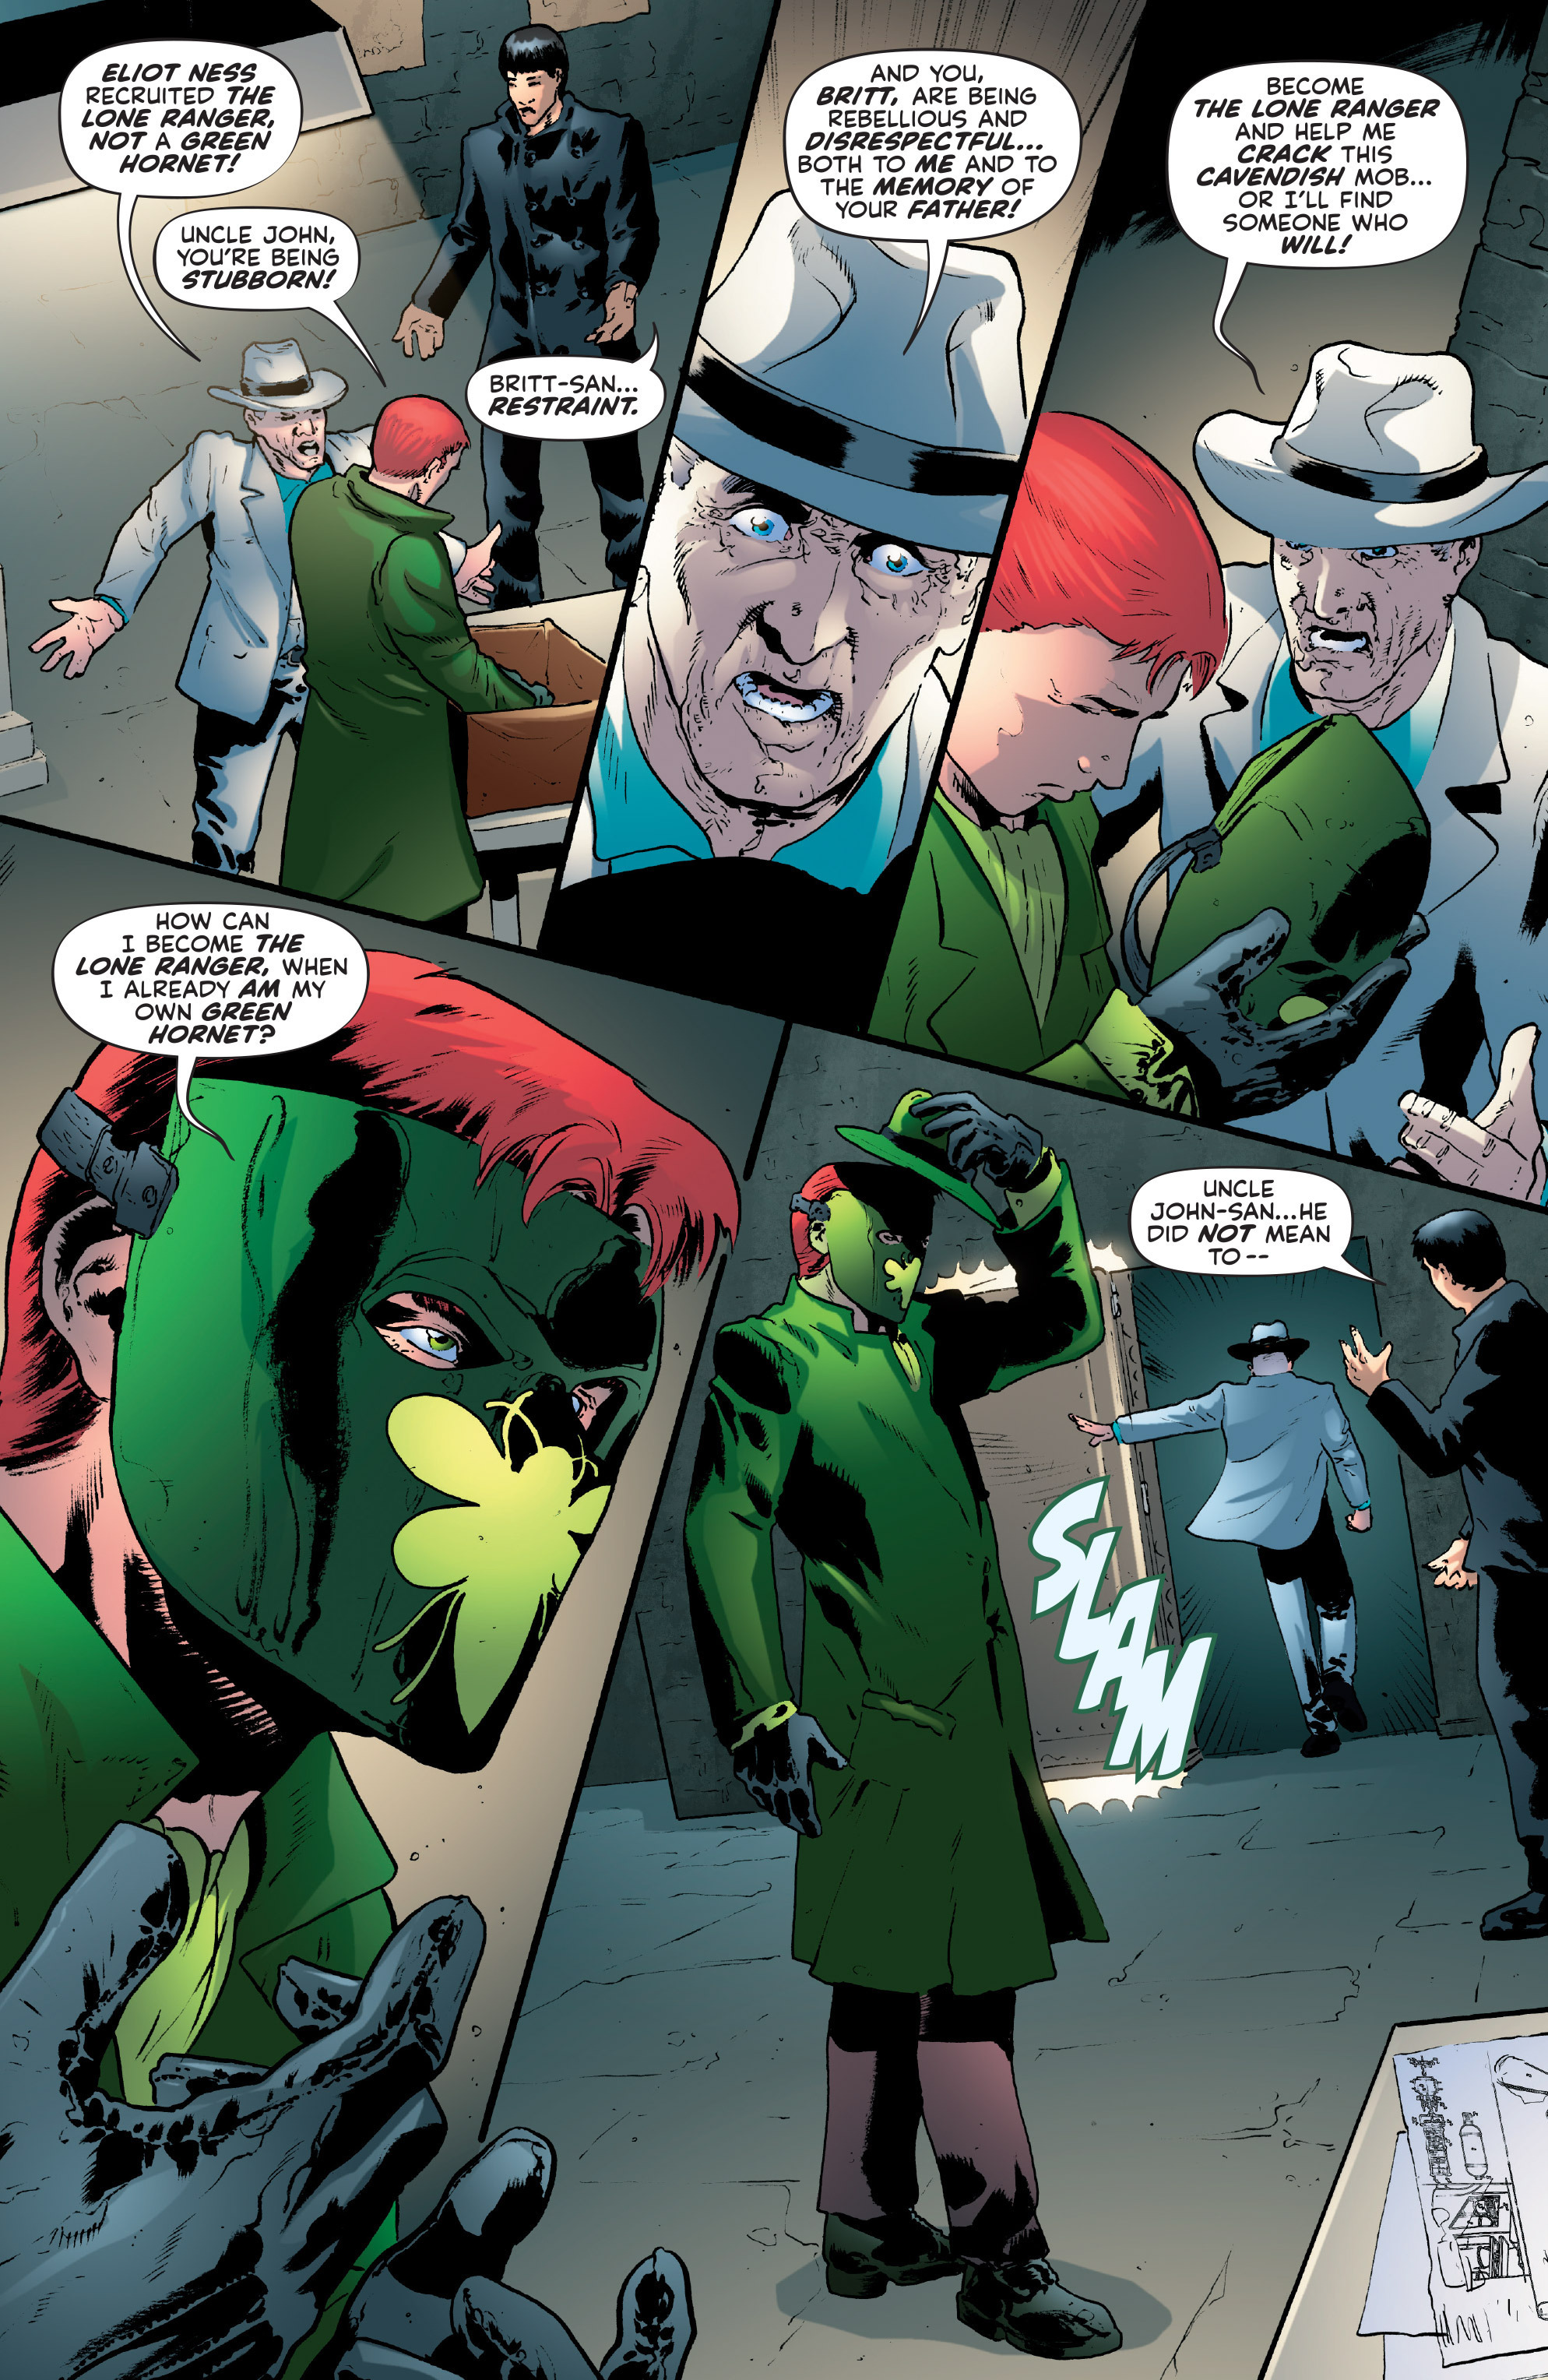 Read online The Lone Ranger/Green Hornet comic -  Issue #2 - 22